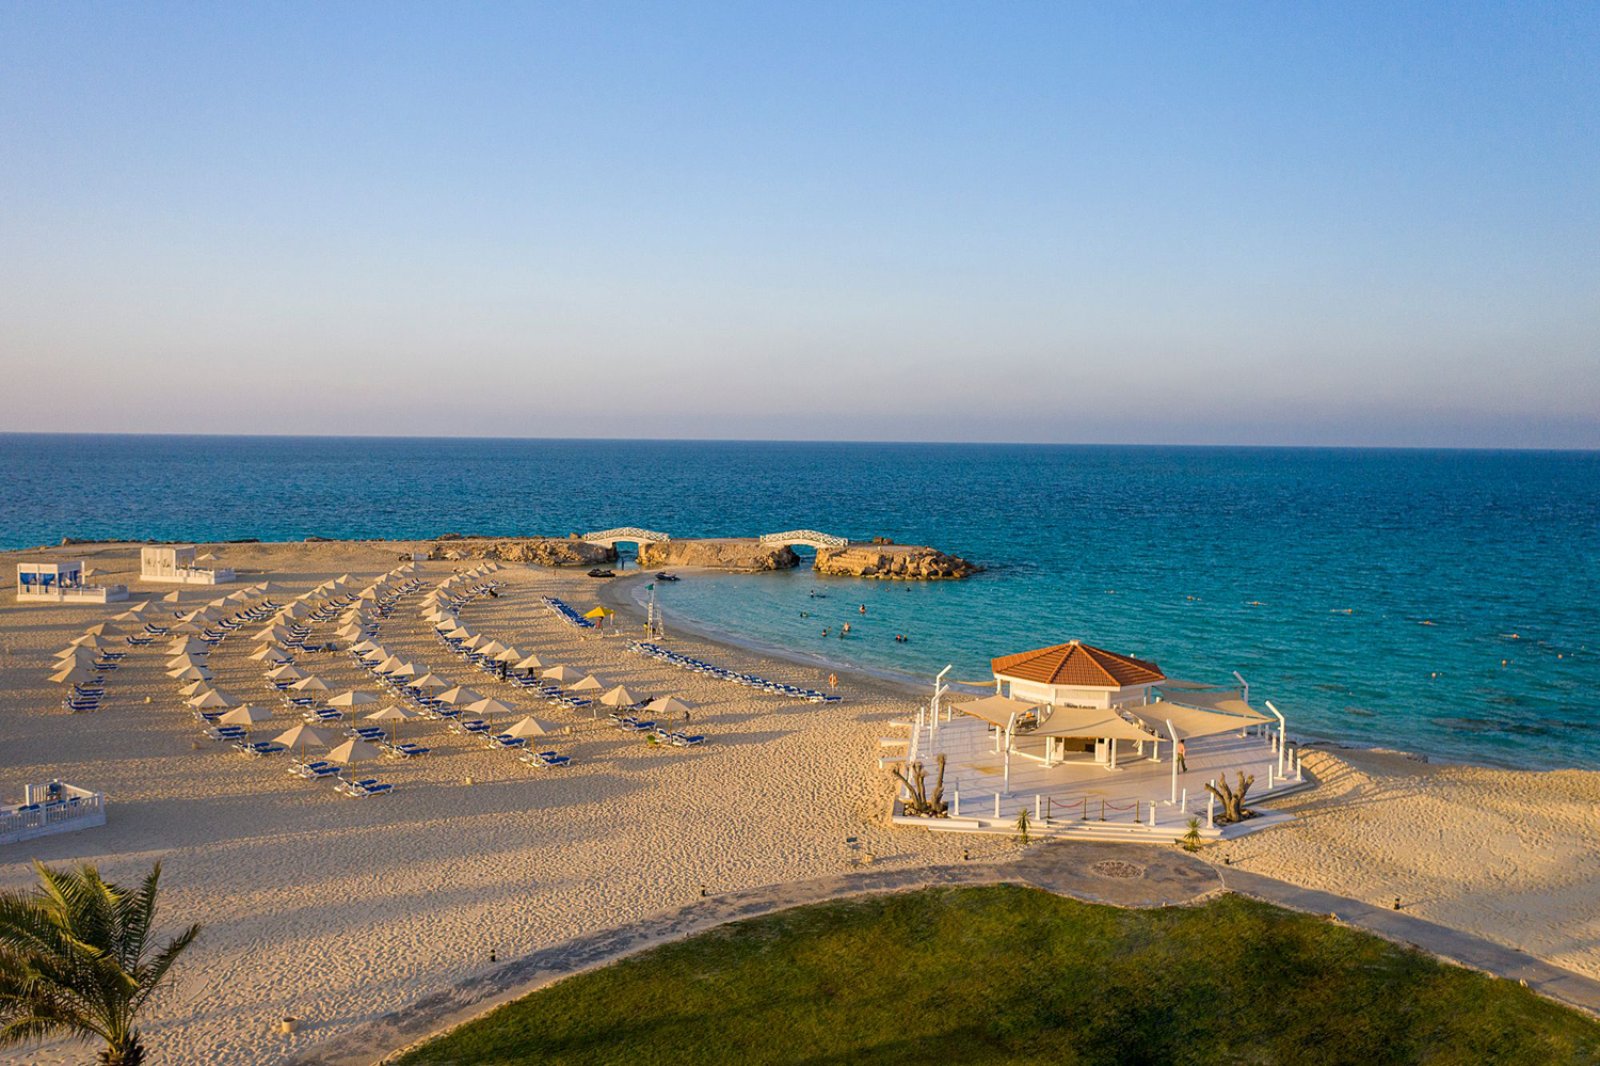 Otkrijte RAJ na plažama Marsa Matruh: Egipatska oaza na obali Sredozemnog mora! 8 dana već od 560€ All Inclusive